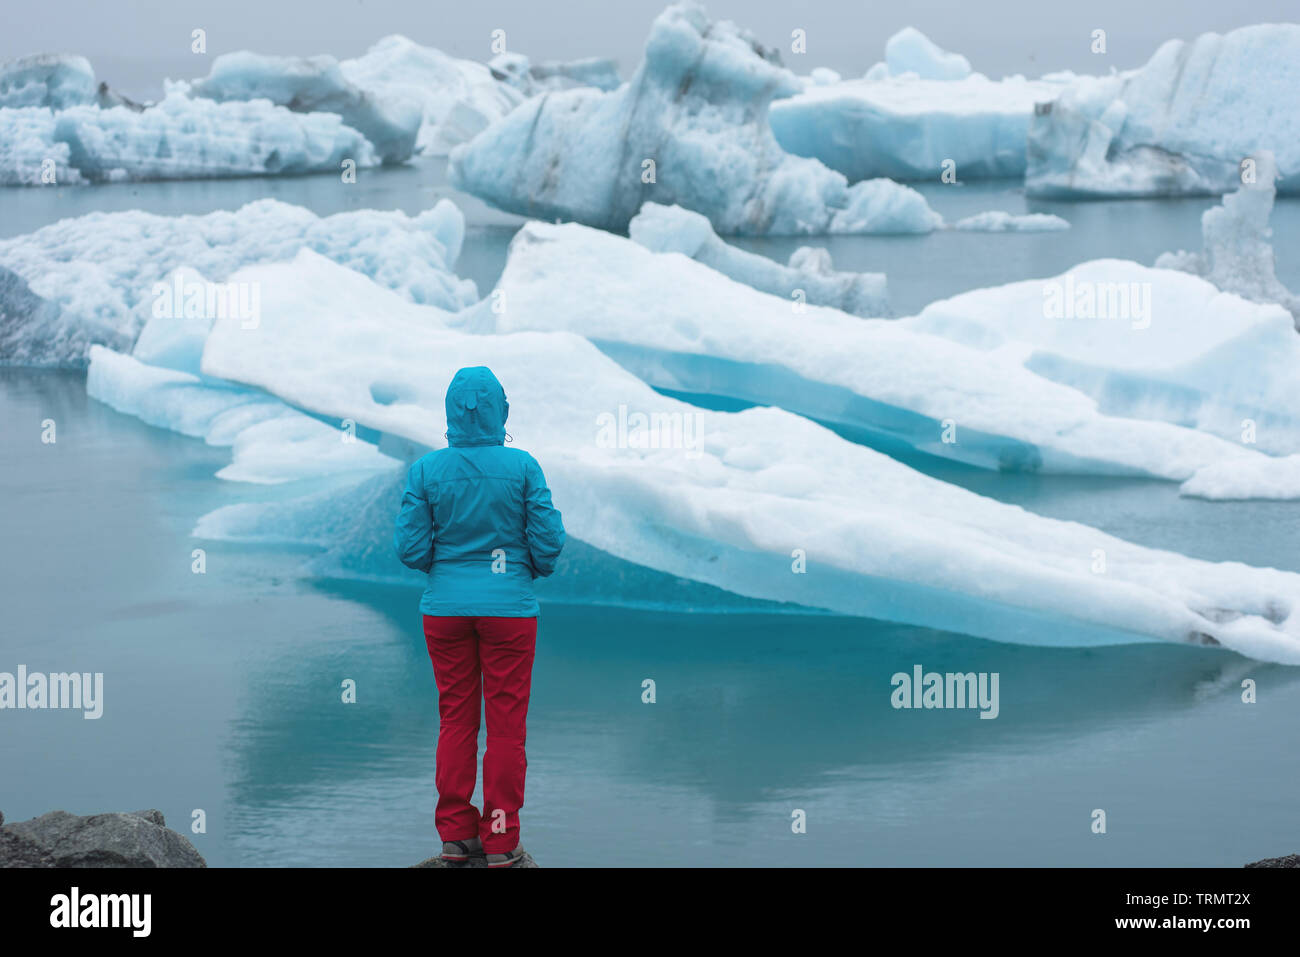 L'admirant les icebergs flottant dans fusion Jokulsarlon glacial Lagoon, à la suite du réchauffement planétaire et du changement climatique. Vatnajokull National P Banque D'Images